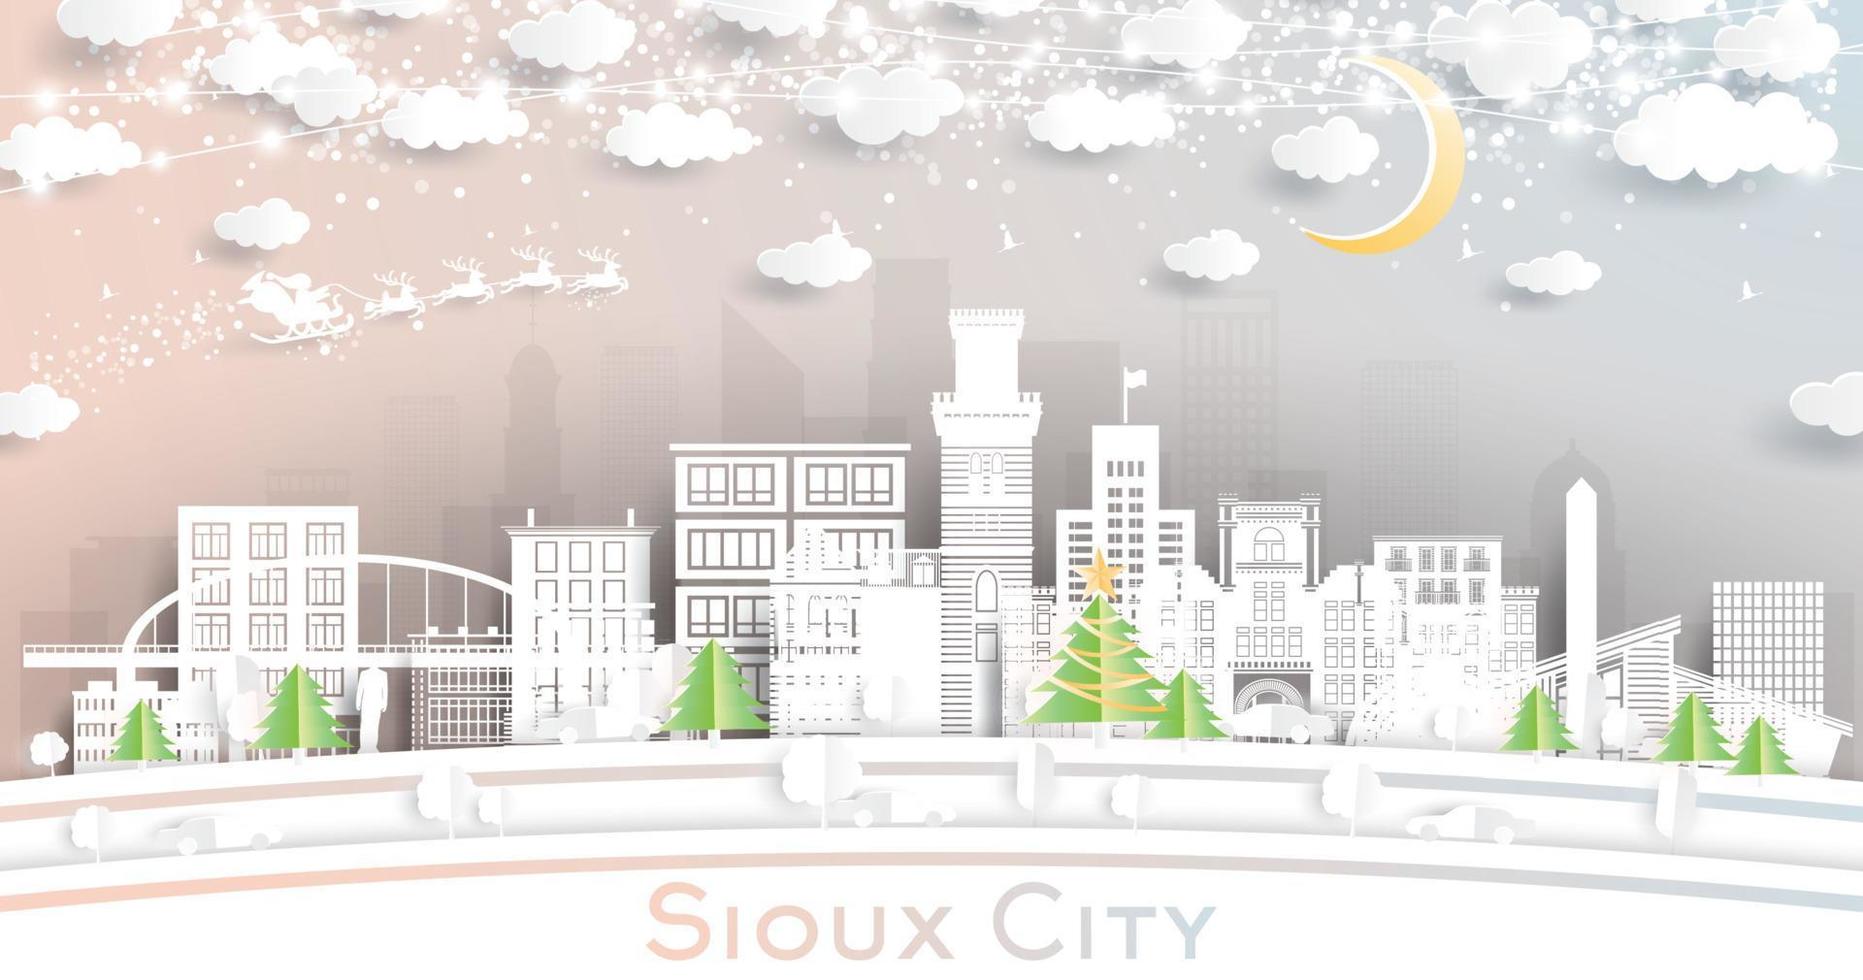 horizonte de la ciudad de sioux city iowa en estilo de corte de papel con copos de nieve, luna y guirnalda de neón. vector